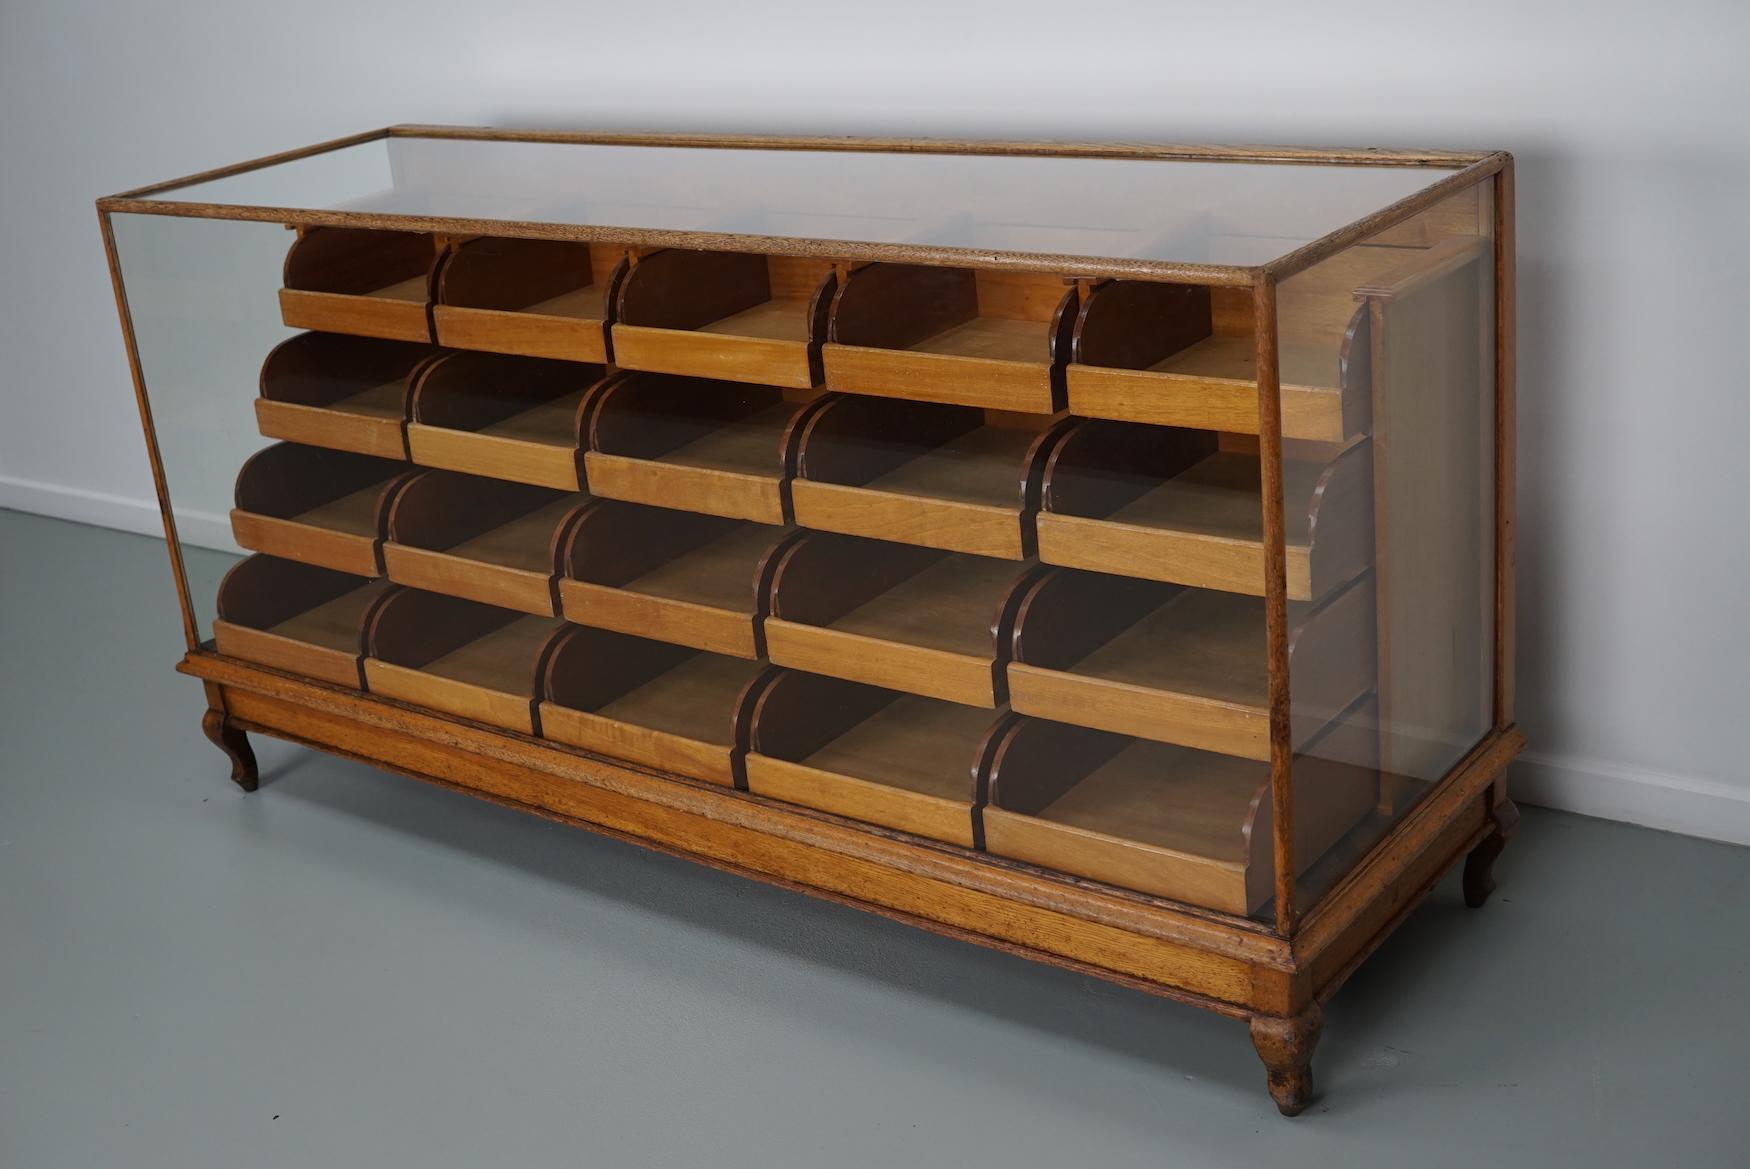 Dieser Kurzwarenladentisch aus Eiche stammt aus dem späten 19. Jahrhundert und wurde in England hergestellt. Er besteht aus einem massiven Holzrahmen, einem Glasgehäuse und 20 Schubladen aus Mahagoni mit Messinggriffen.